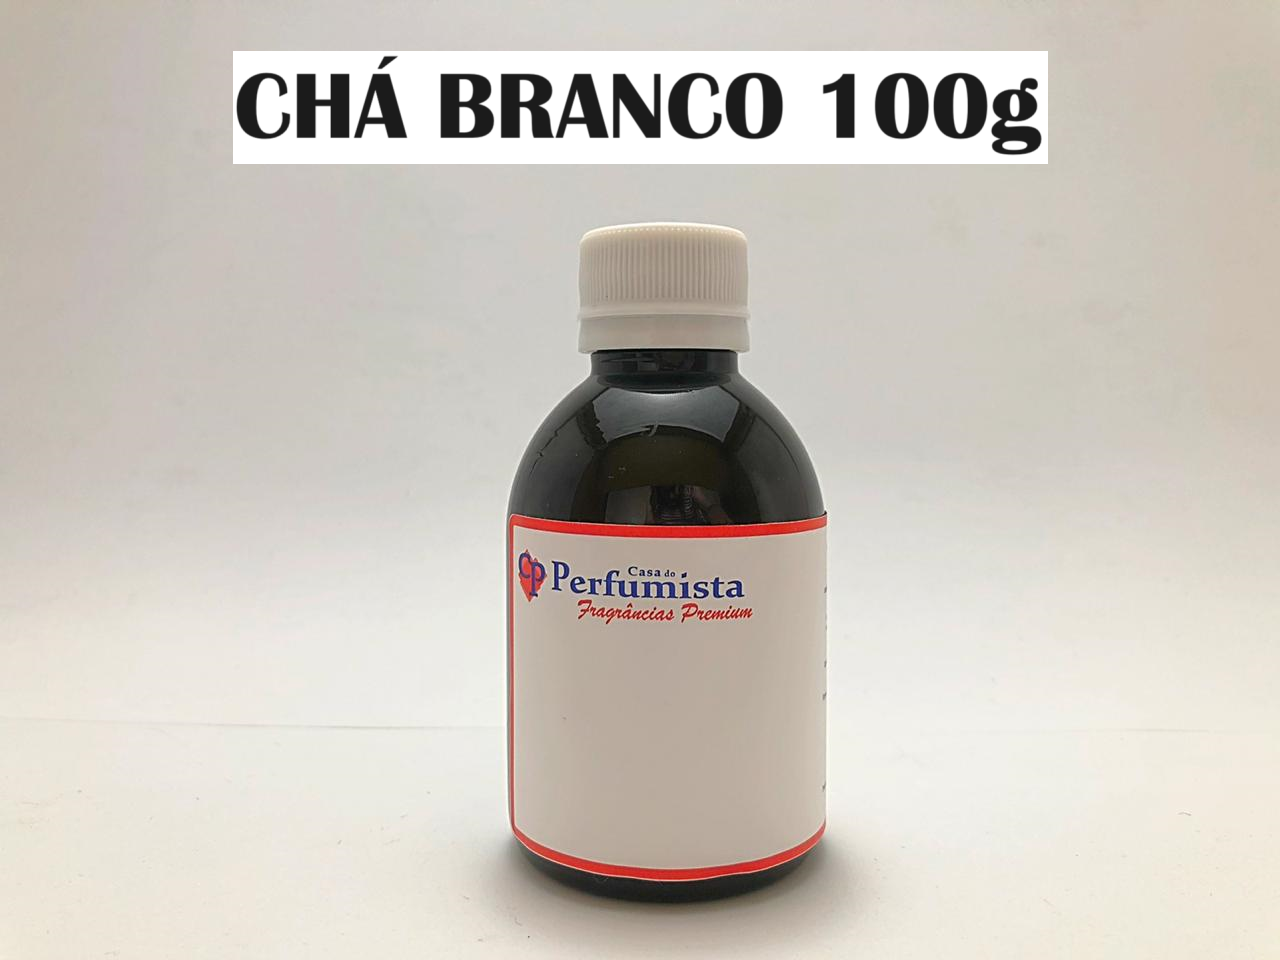 CHÁ BRANCO - 100g